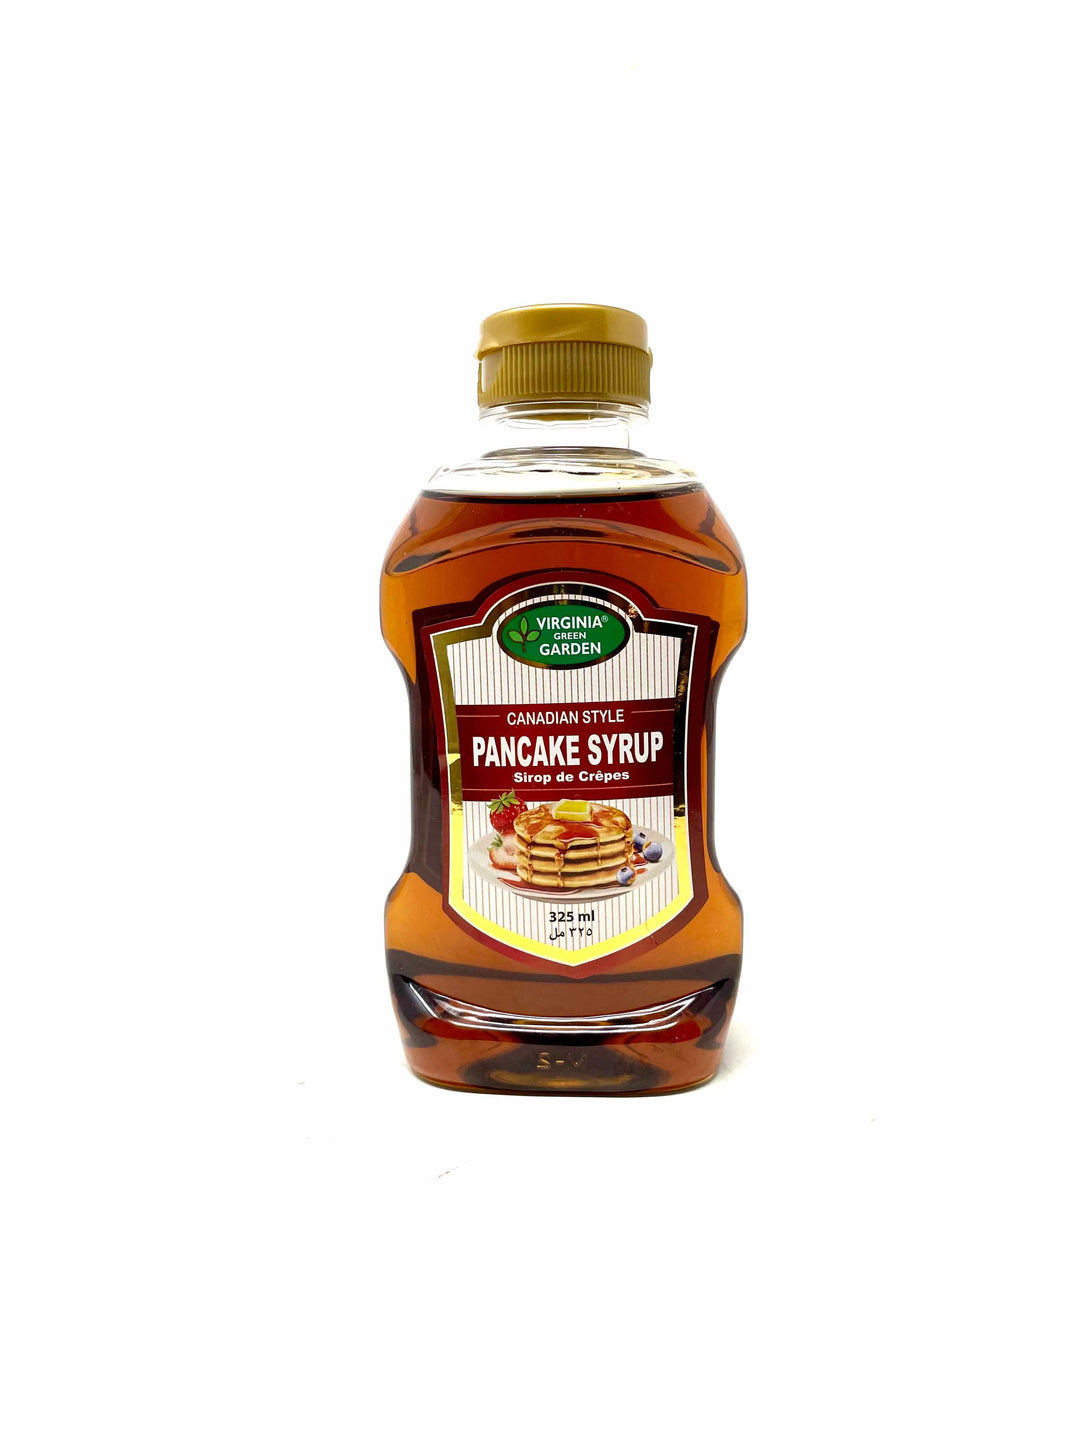 Virginia Green Garden Pancake Syrup 325ml